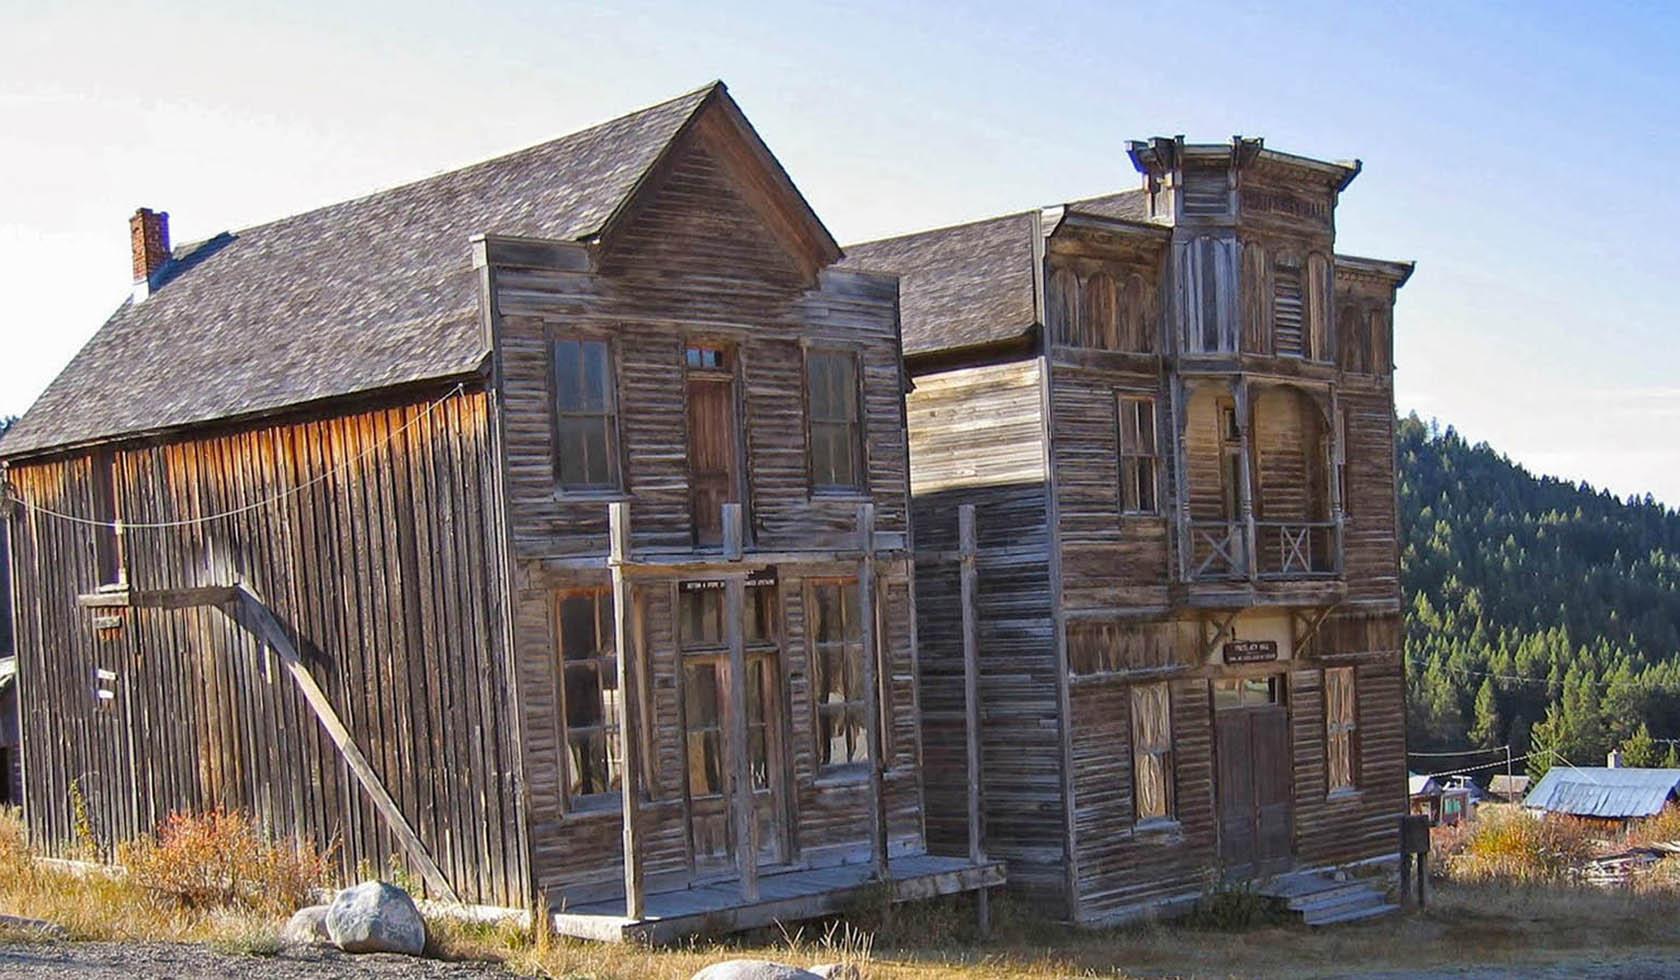 蒙大拿州埃尔克霍恩州立公园的废弃建筑